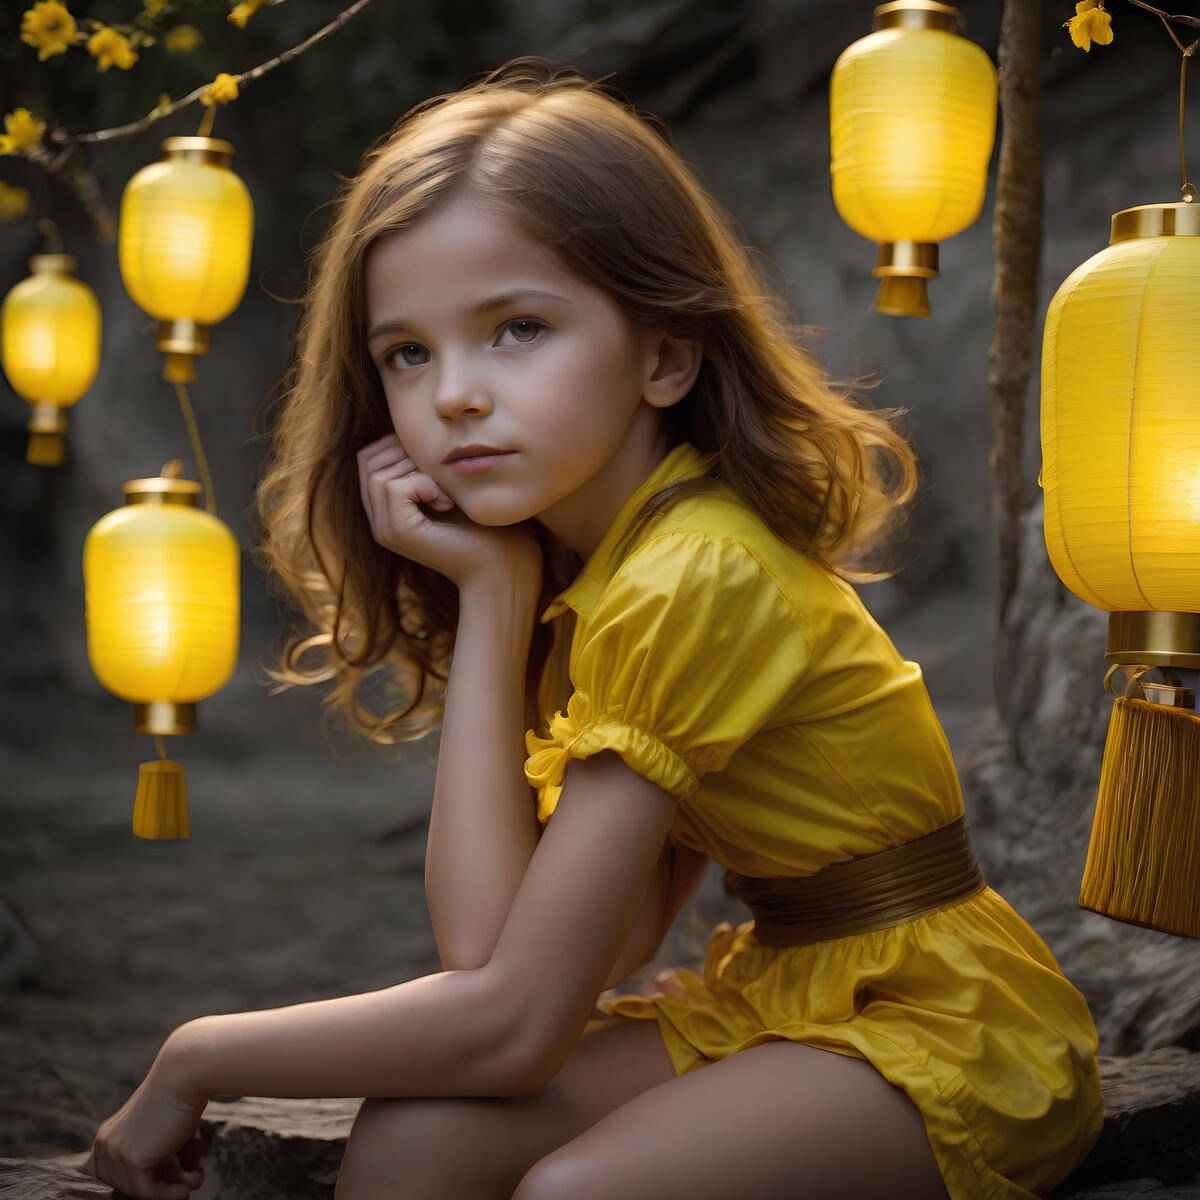 Прикольная картинка с девочкой и желтыми фонарями